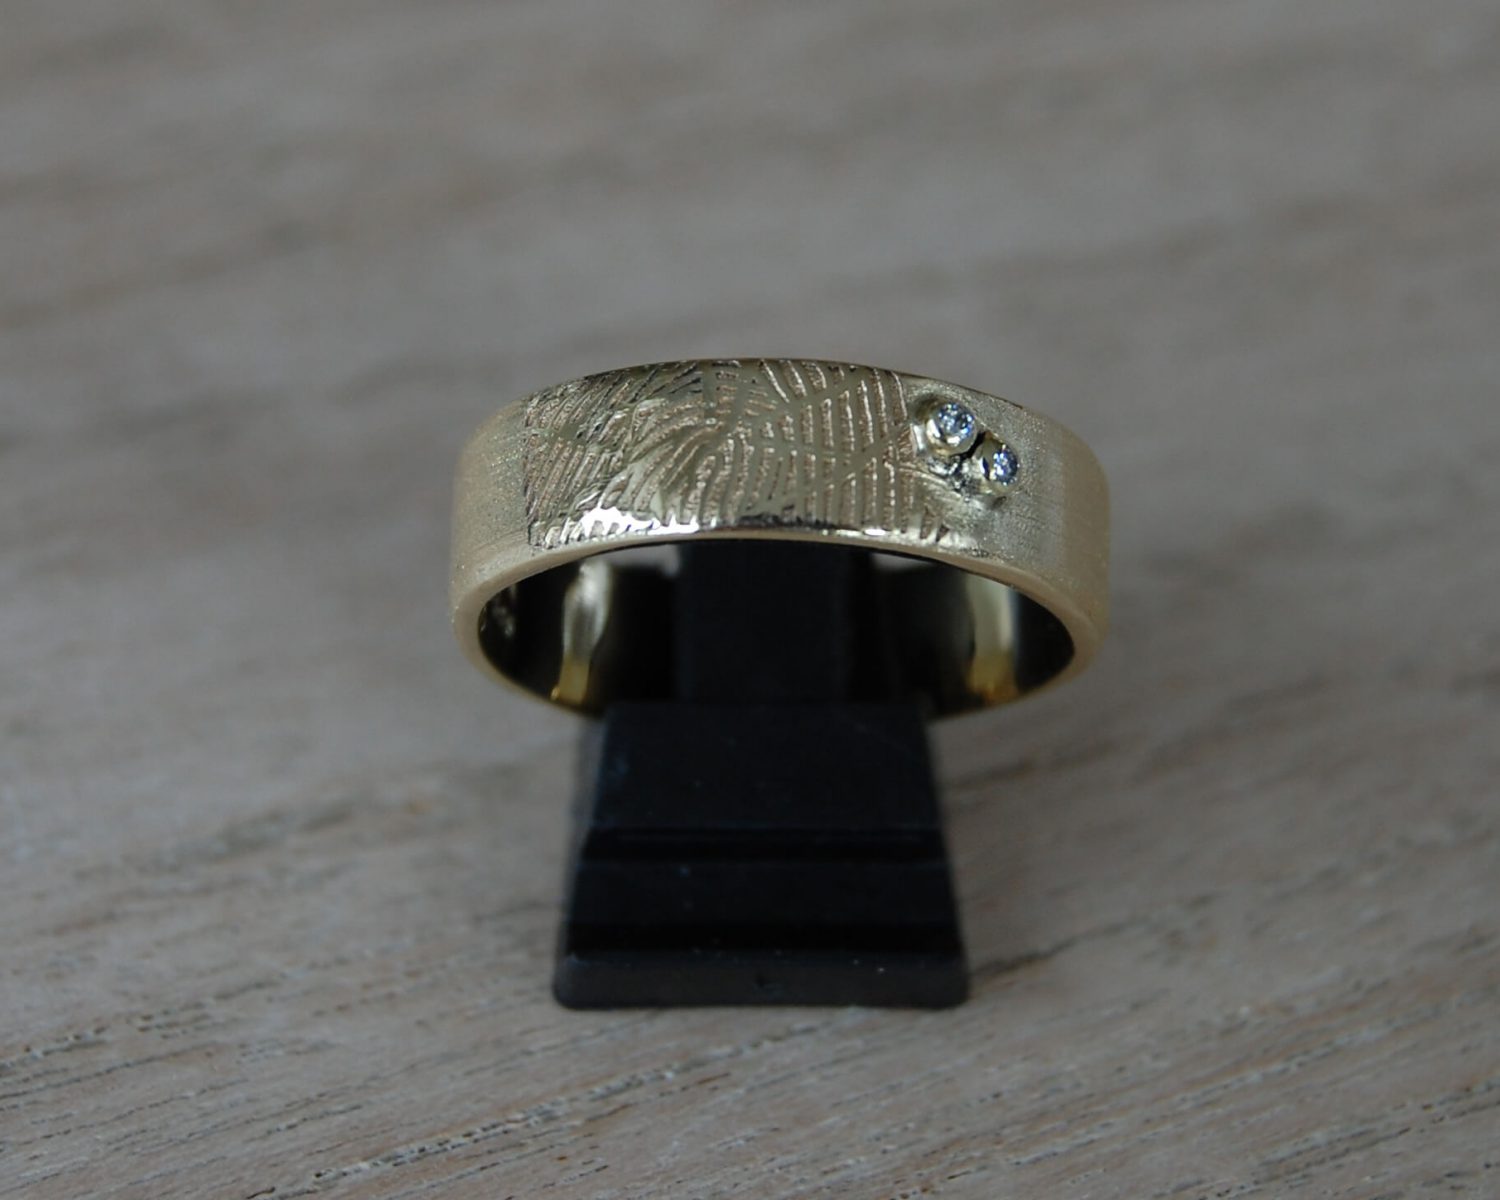 Ring gemaakt uit aangeleverd goud - inclusief 2 opnieuw gezette diamantjes en gelaserde vingerafdruk.